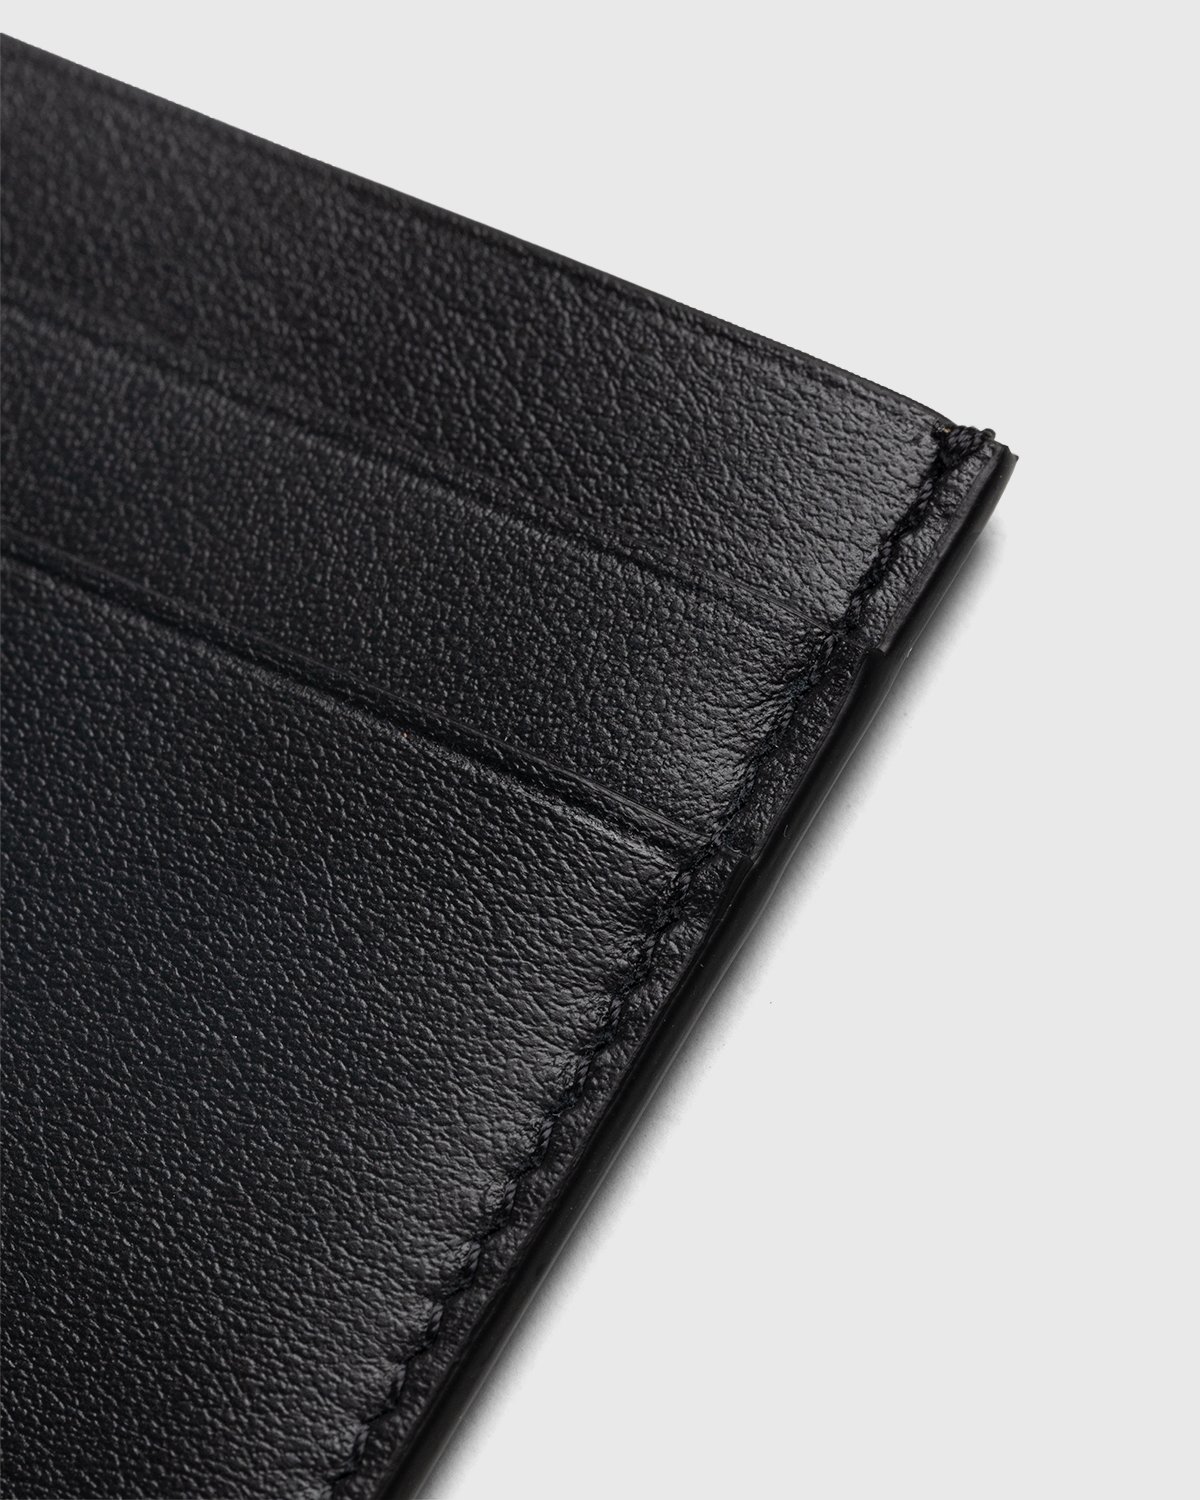 Jil Sander - Leather Card Holder Black - Accessories - Black - Image 3